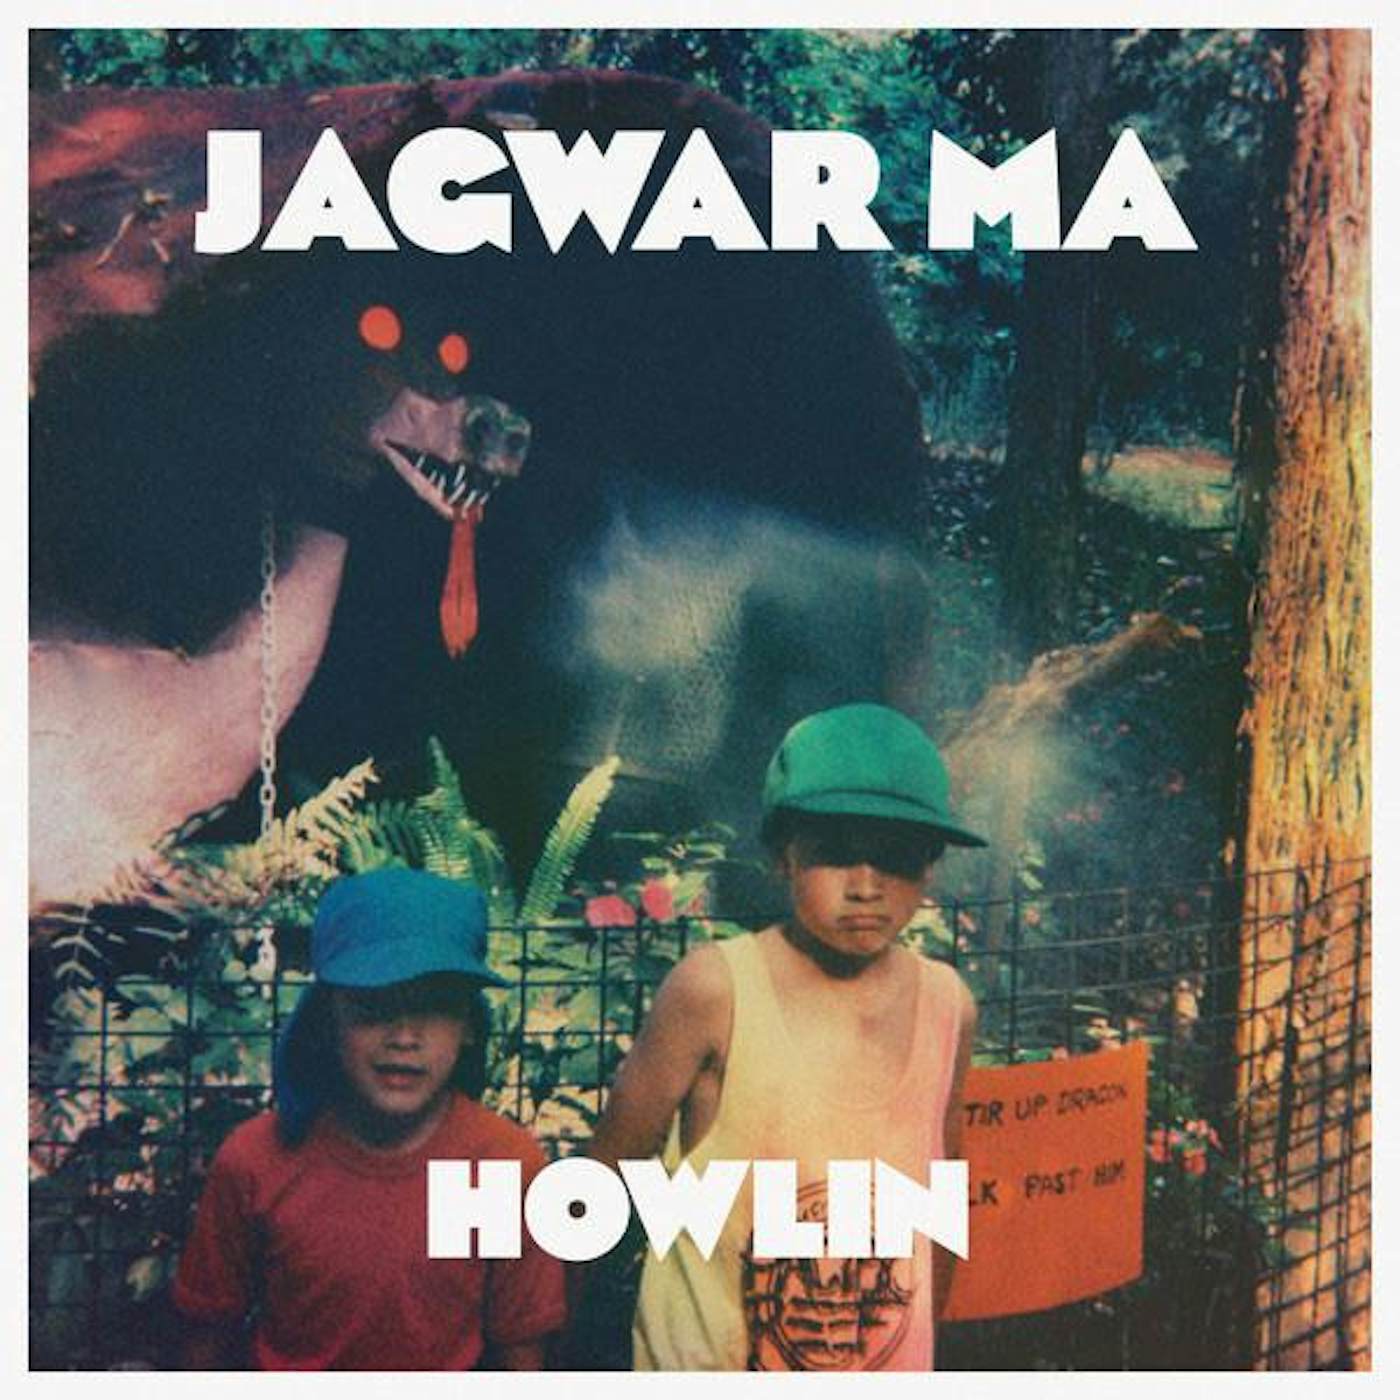 Jagwar Ma HOWLIN Vinyl Record - UK Release